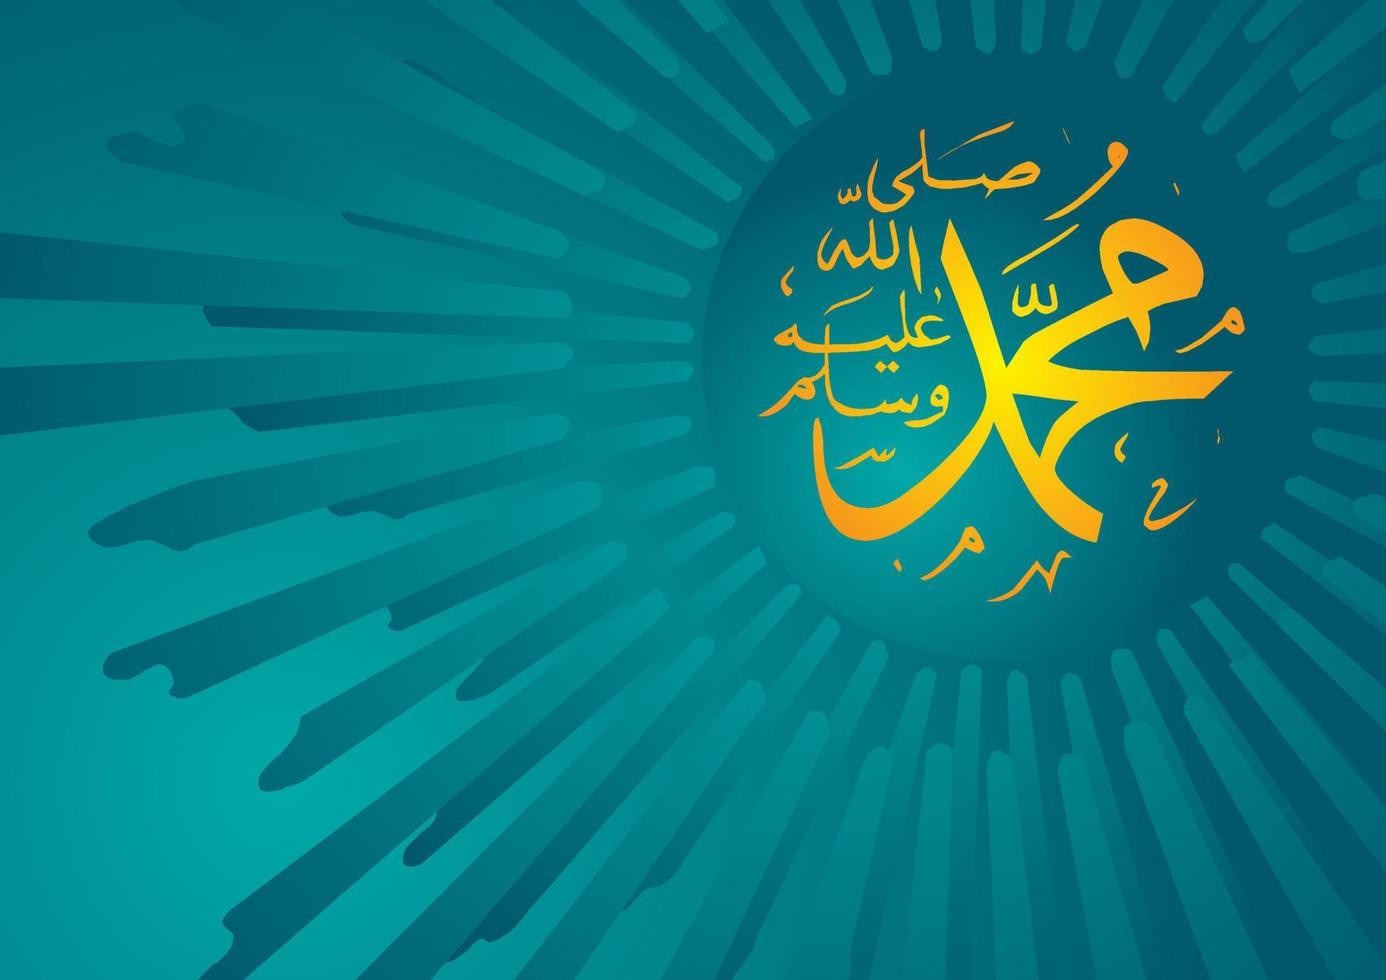 la calligrafia araba e islamica del profeta Maometto la pace sia su di lui. L'arte islamica tradizionale e moderna può essere utilizzata per molti argomenti come mawlid, el nabawi. traduzione il profeta Maometto vettore